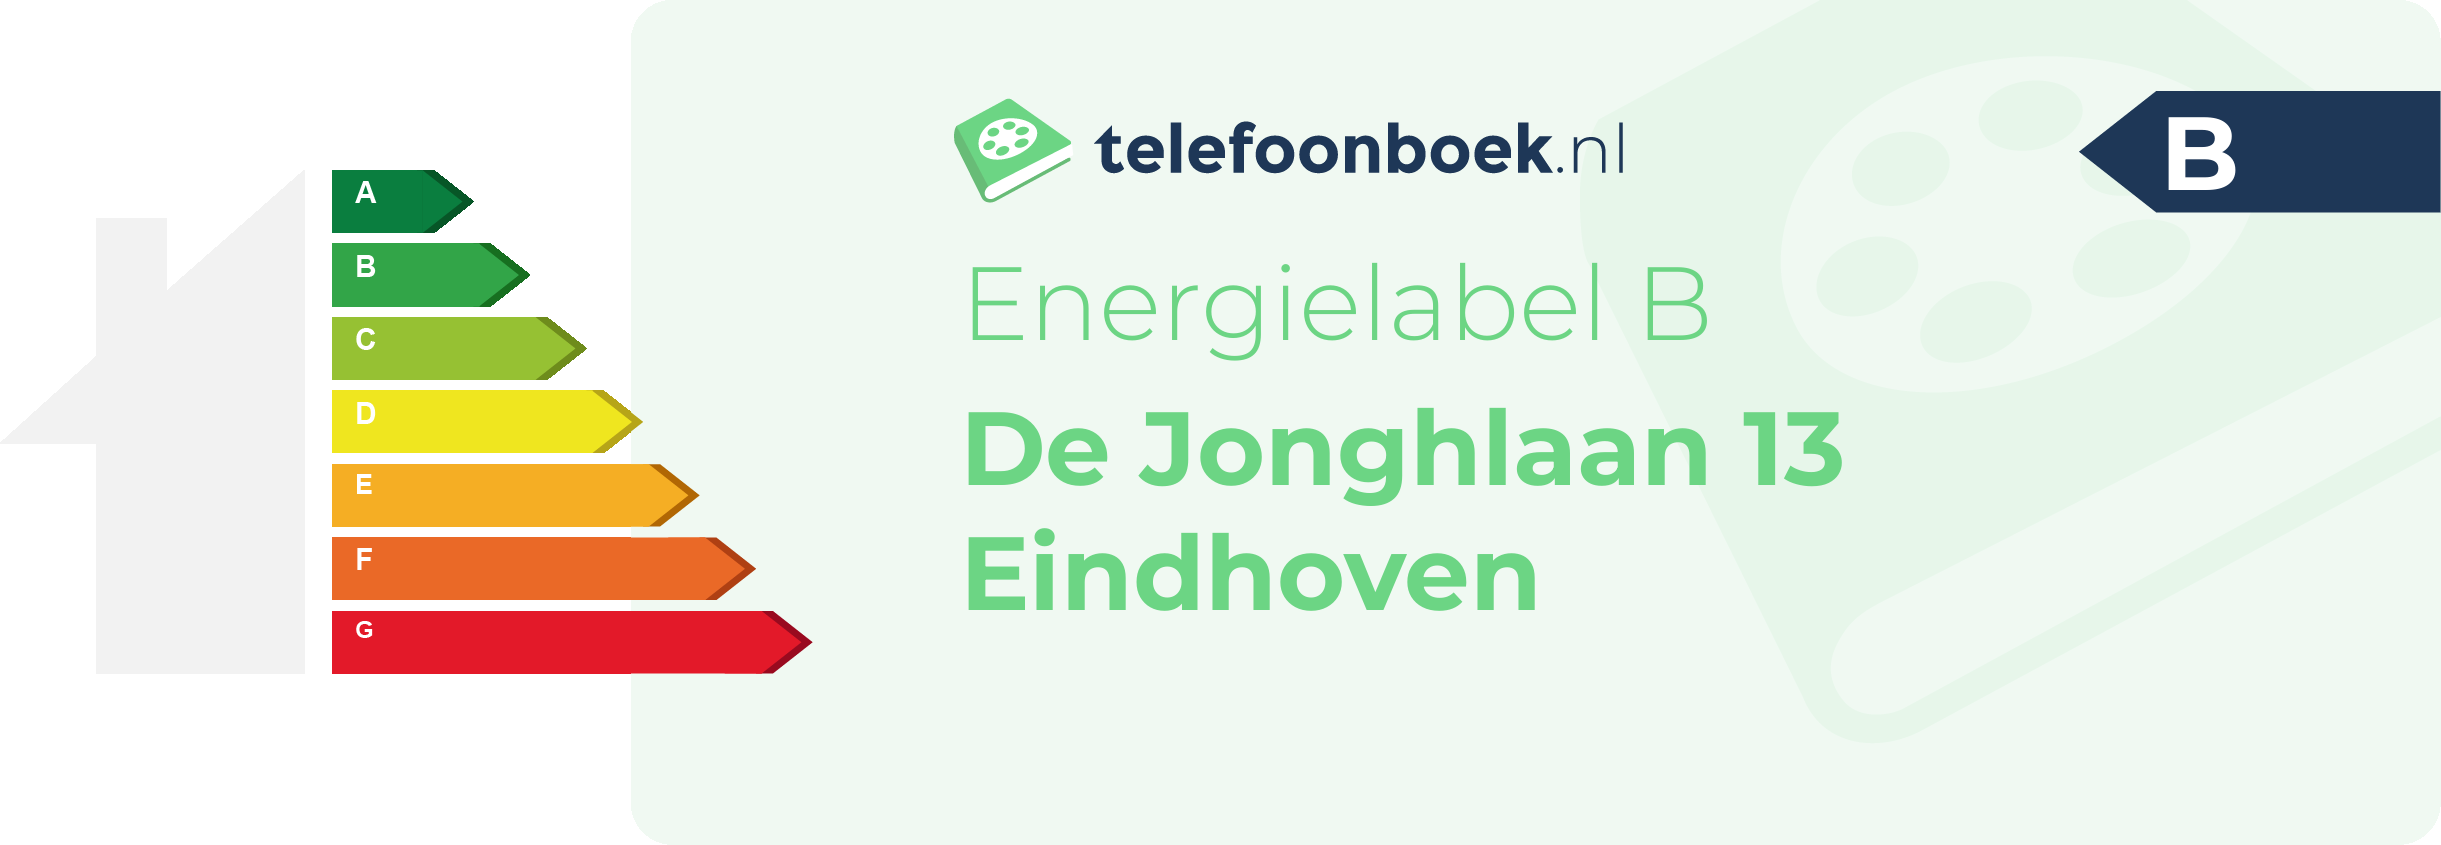 Energielabel De Jonghlaan 13 Eindhoven